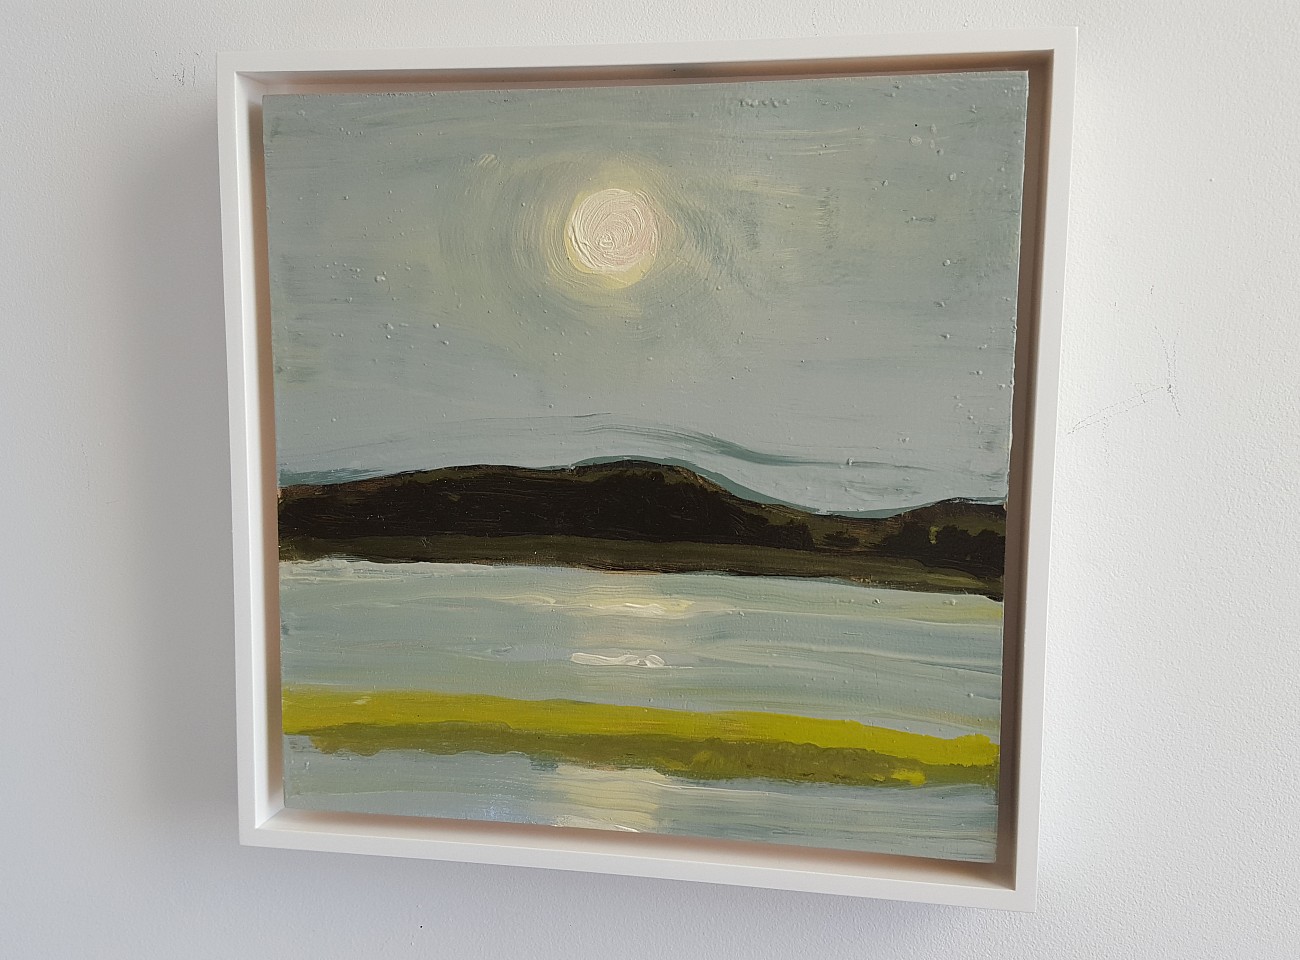 Kathryn Lynch
Sun, 2015
lyn614
oil on panel, 10 x 10 inches